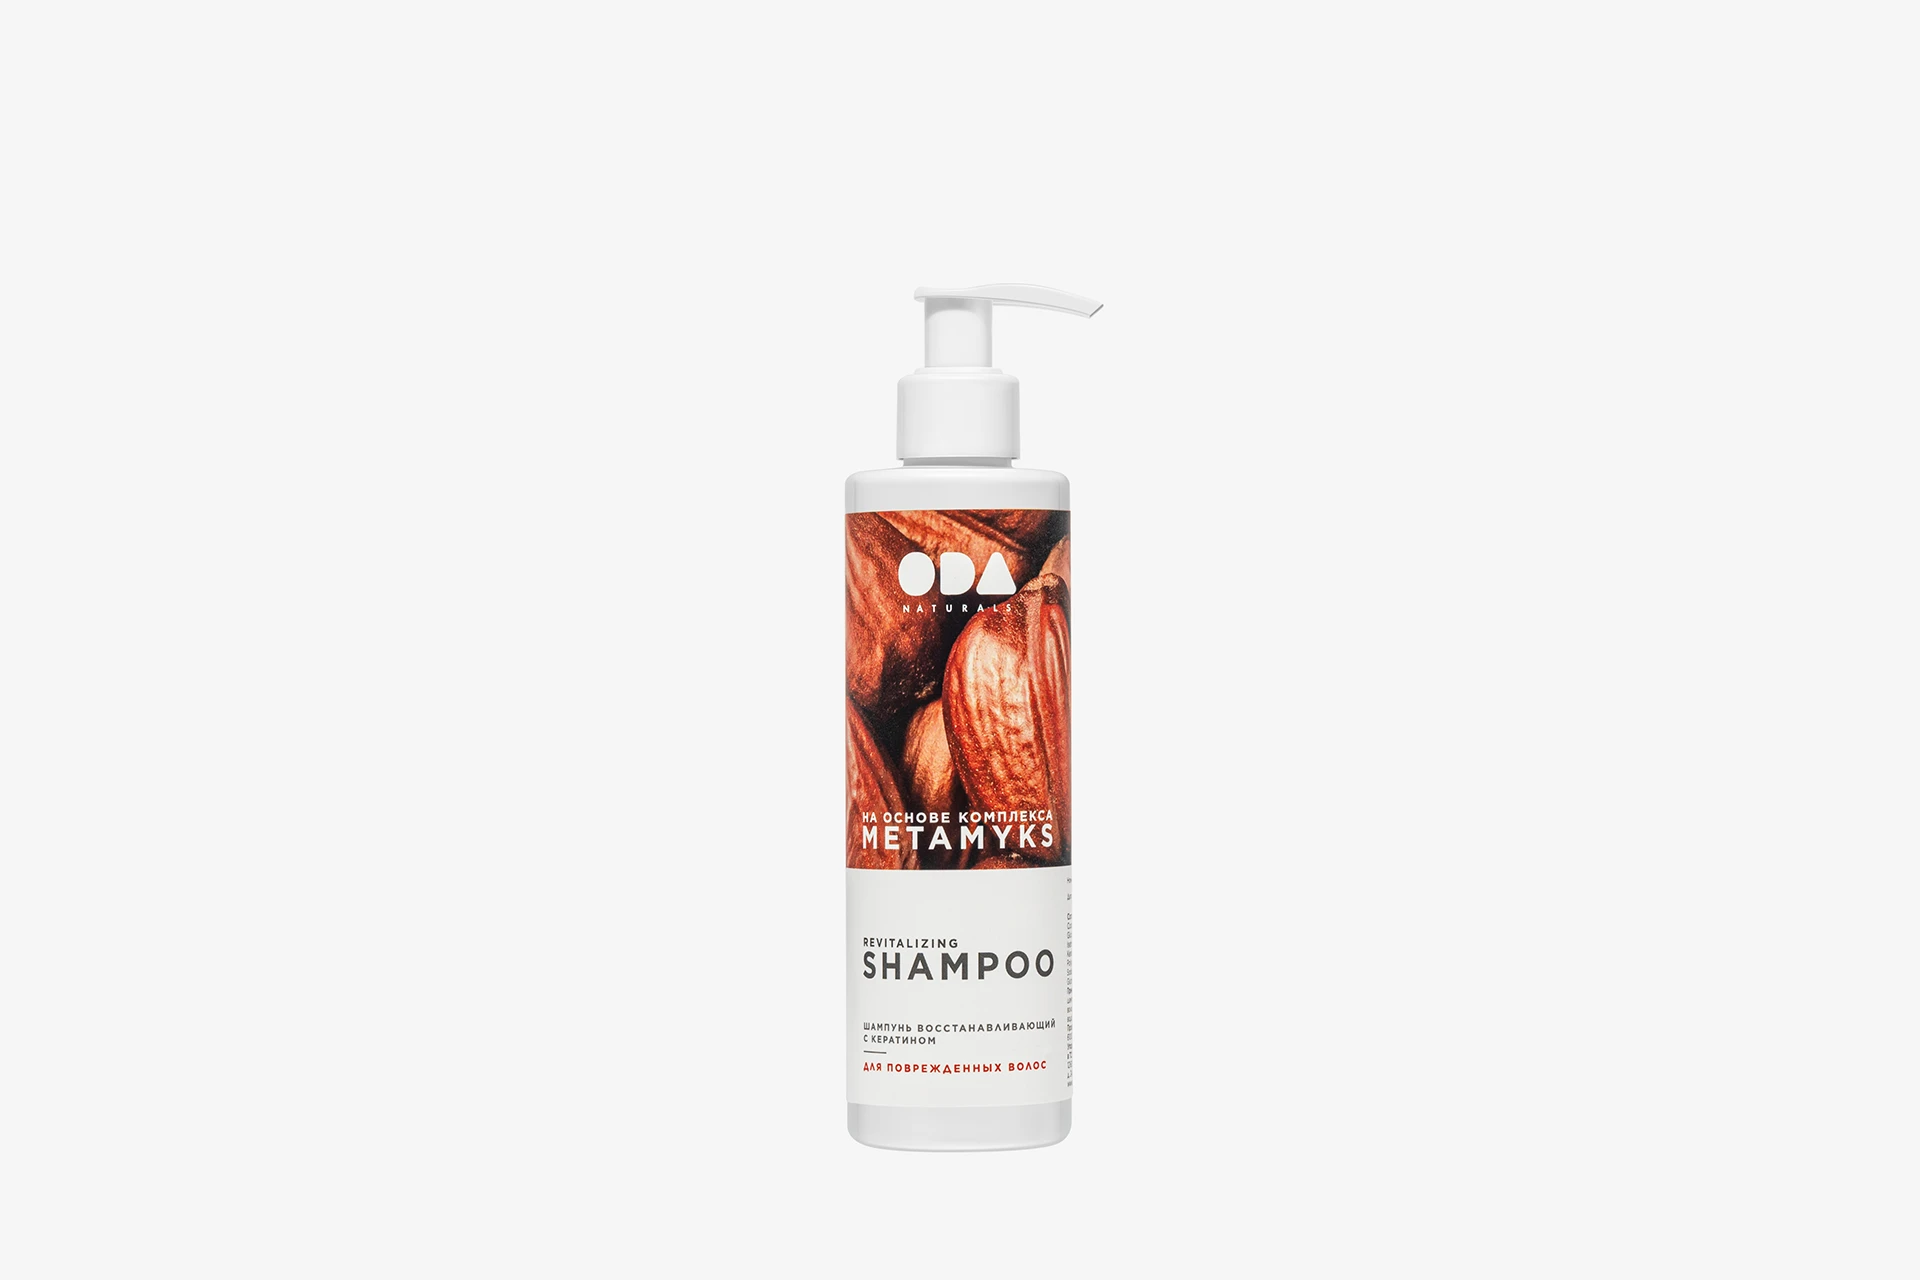 ODA Naturals Revitalizing Shampoo